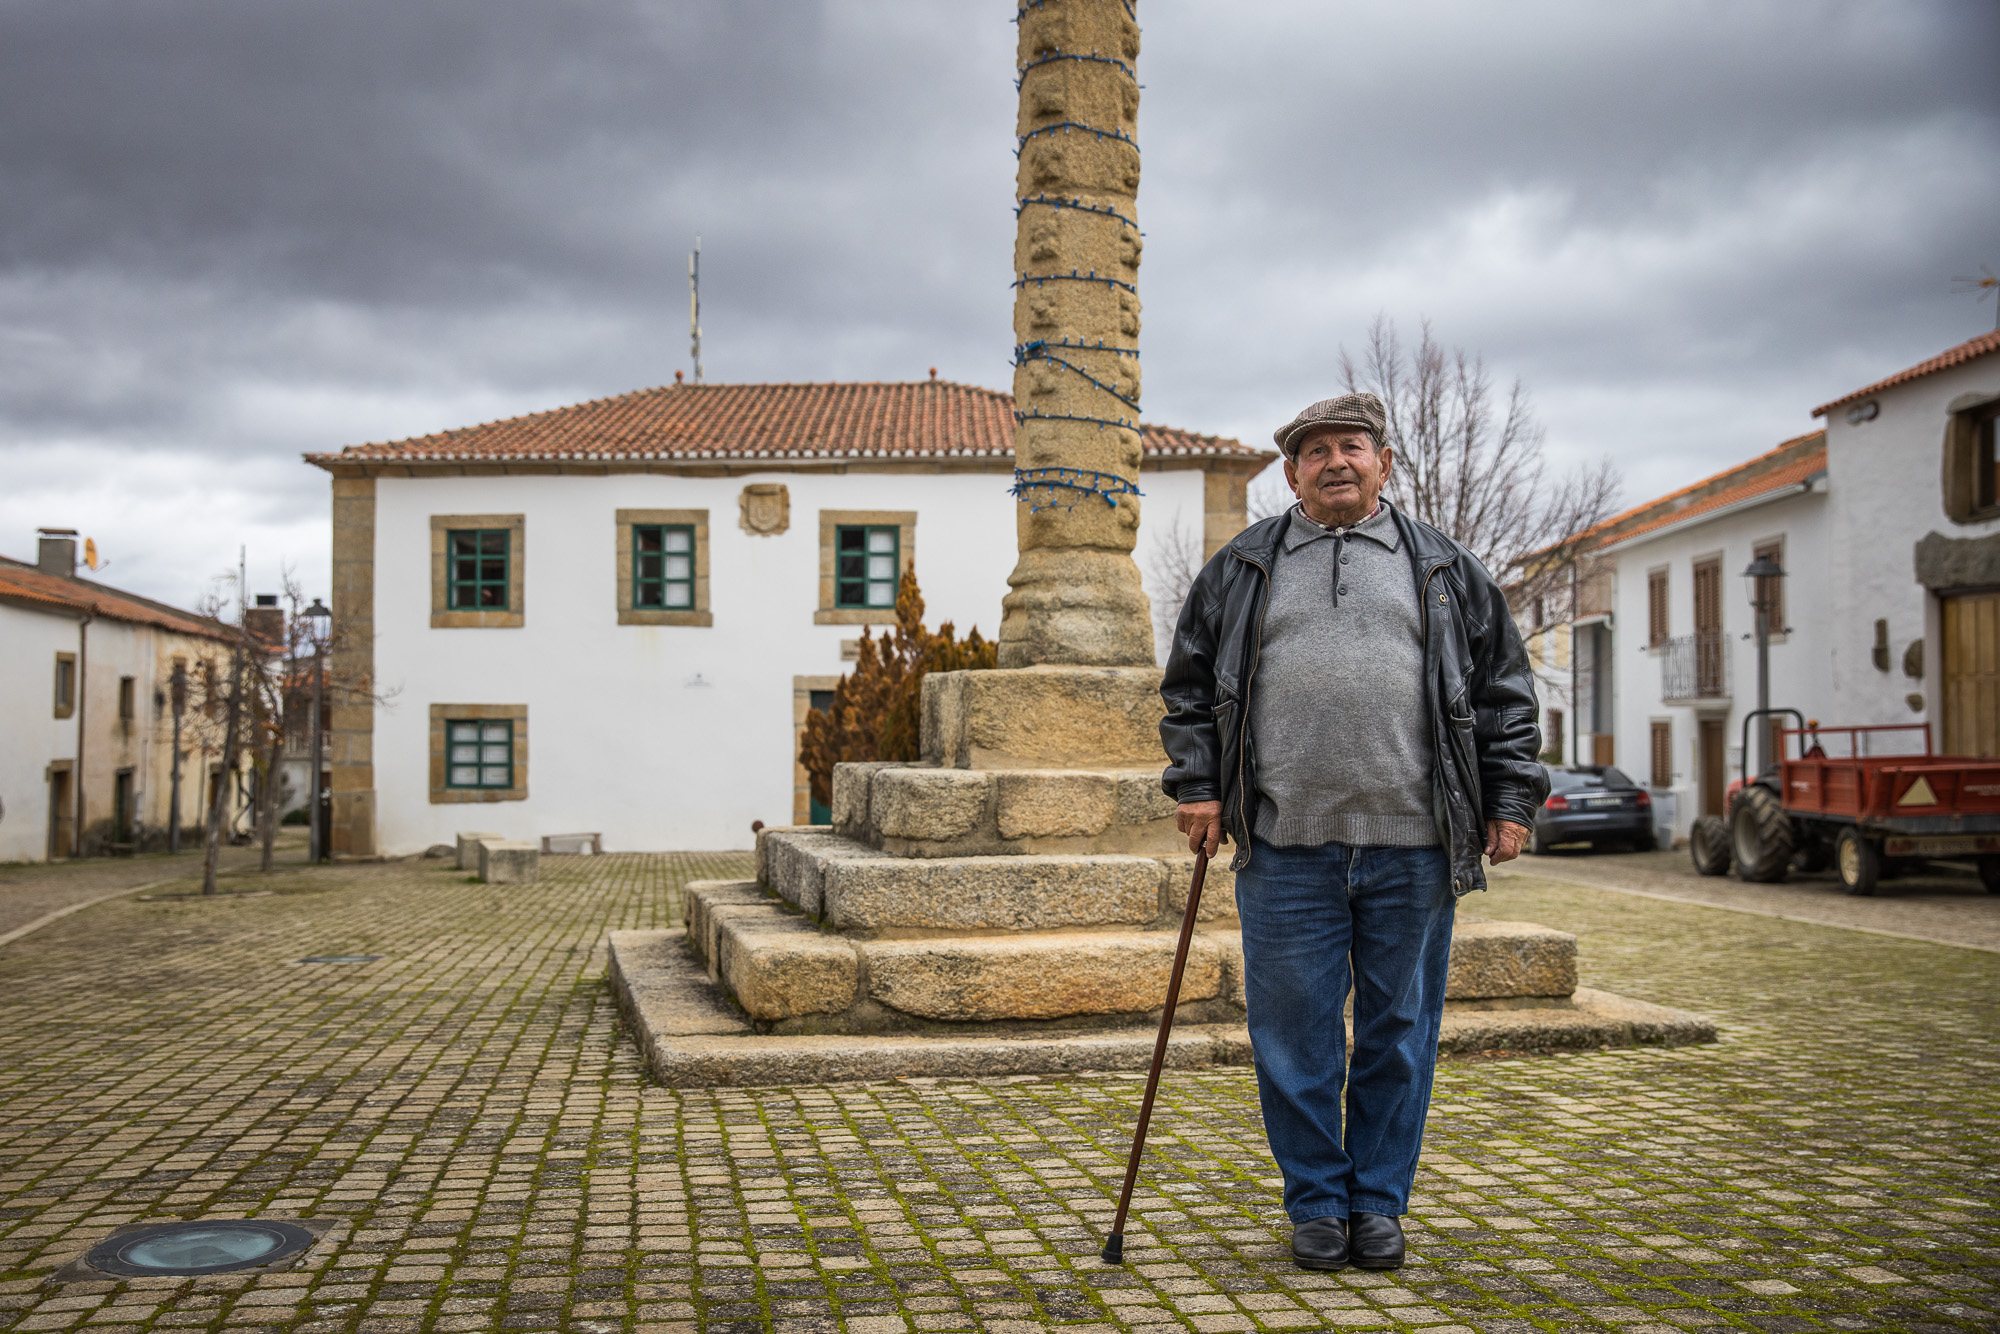 Reportagem sobre lendas populares portuguesas em Algoso, Vimioso, Bragança. Castelo de Algoso. HENRIQUE CASINHAS/OBSERVADOR